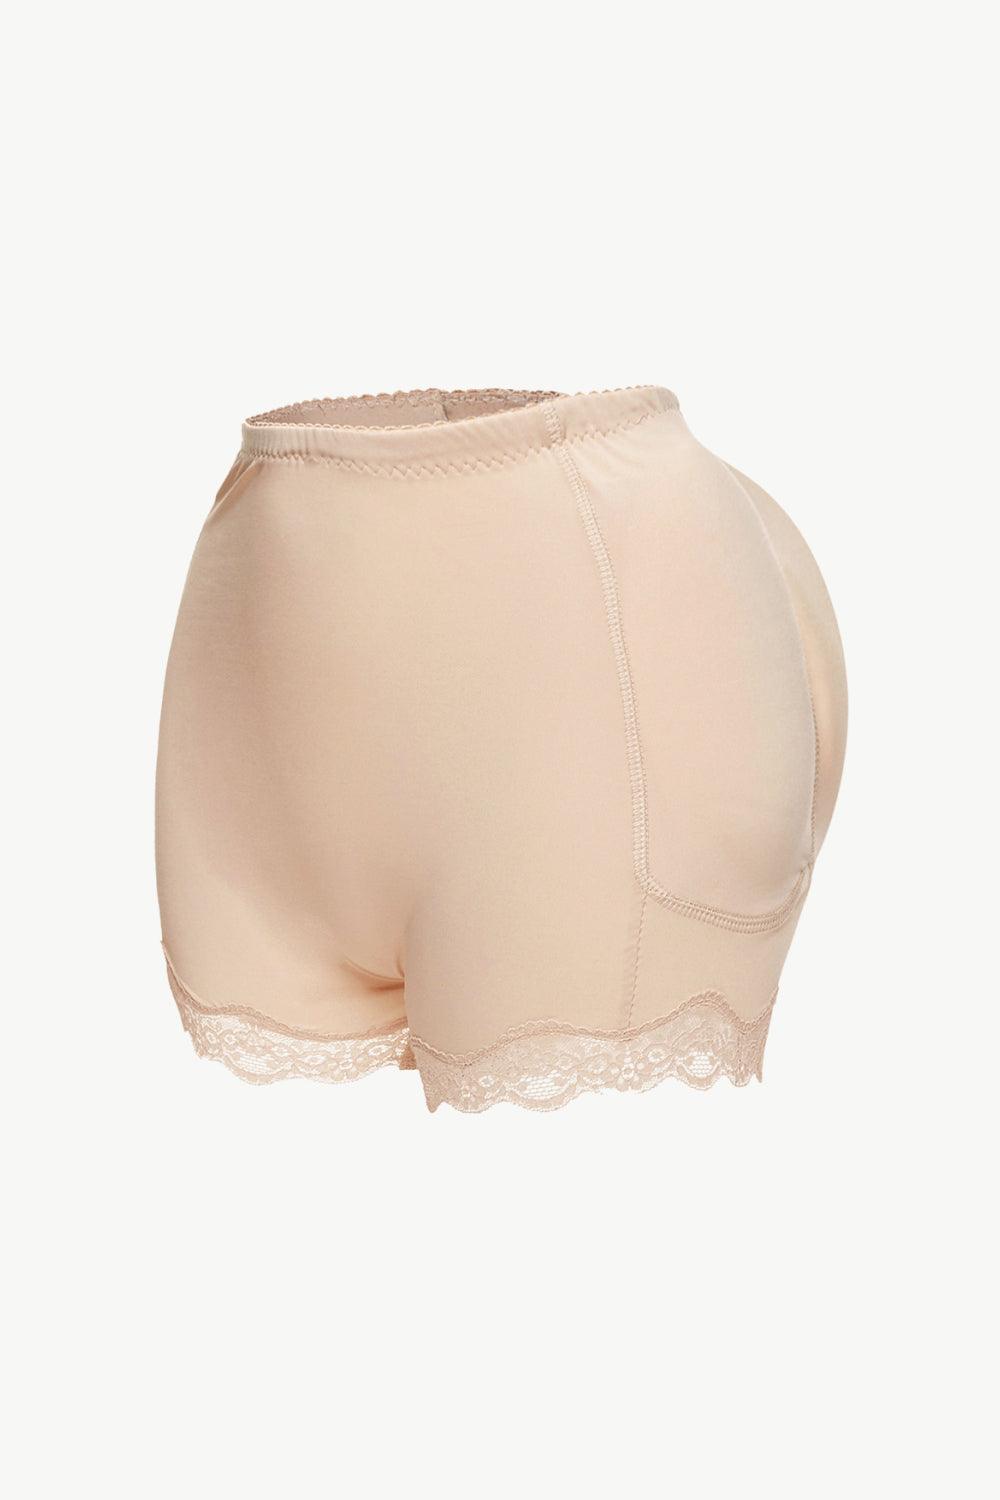 Full Size Lace Trim Shaping Shorts - Flyclothing LLC